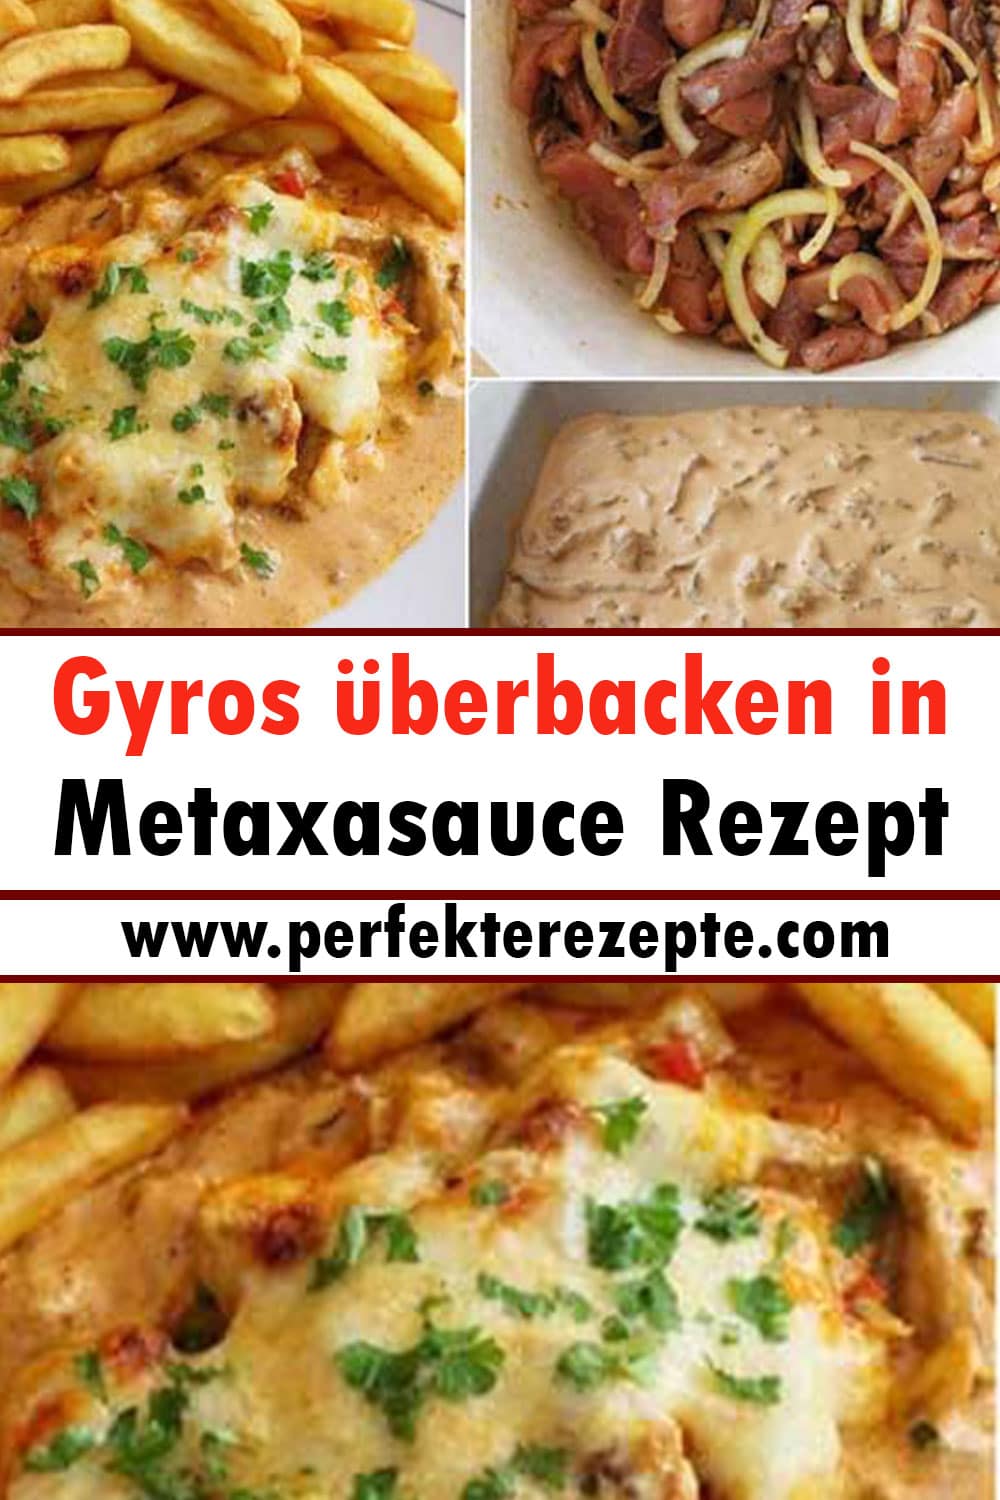 Gyros überbacken in Metaxasauce Rezept zum Abendessen!